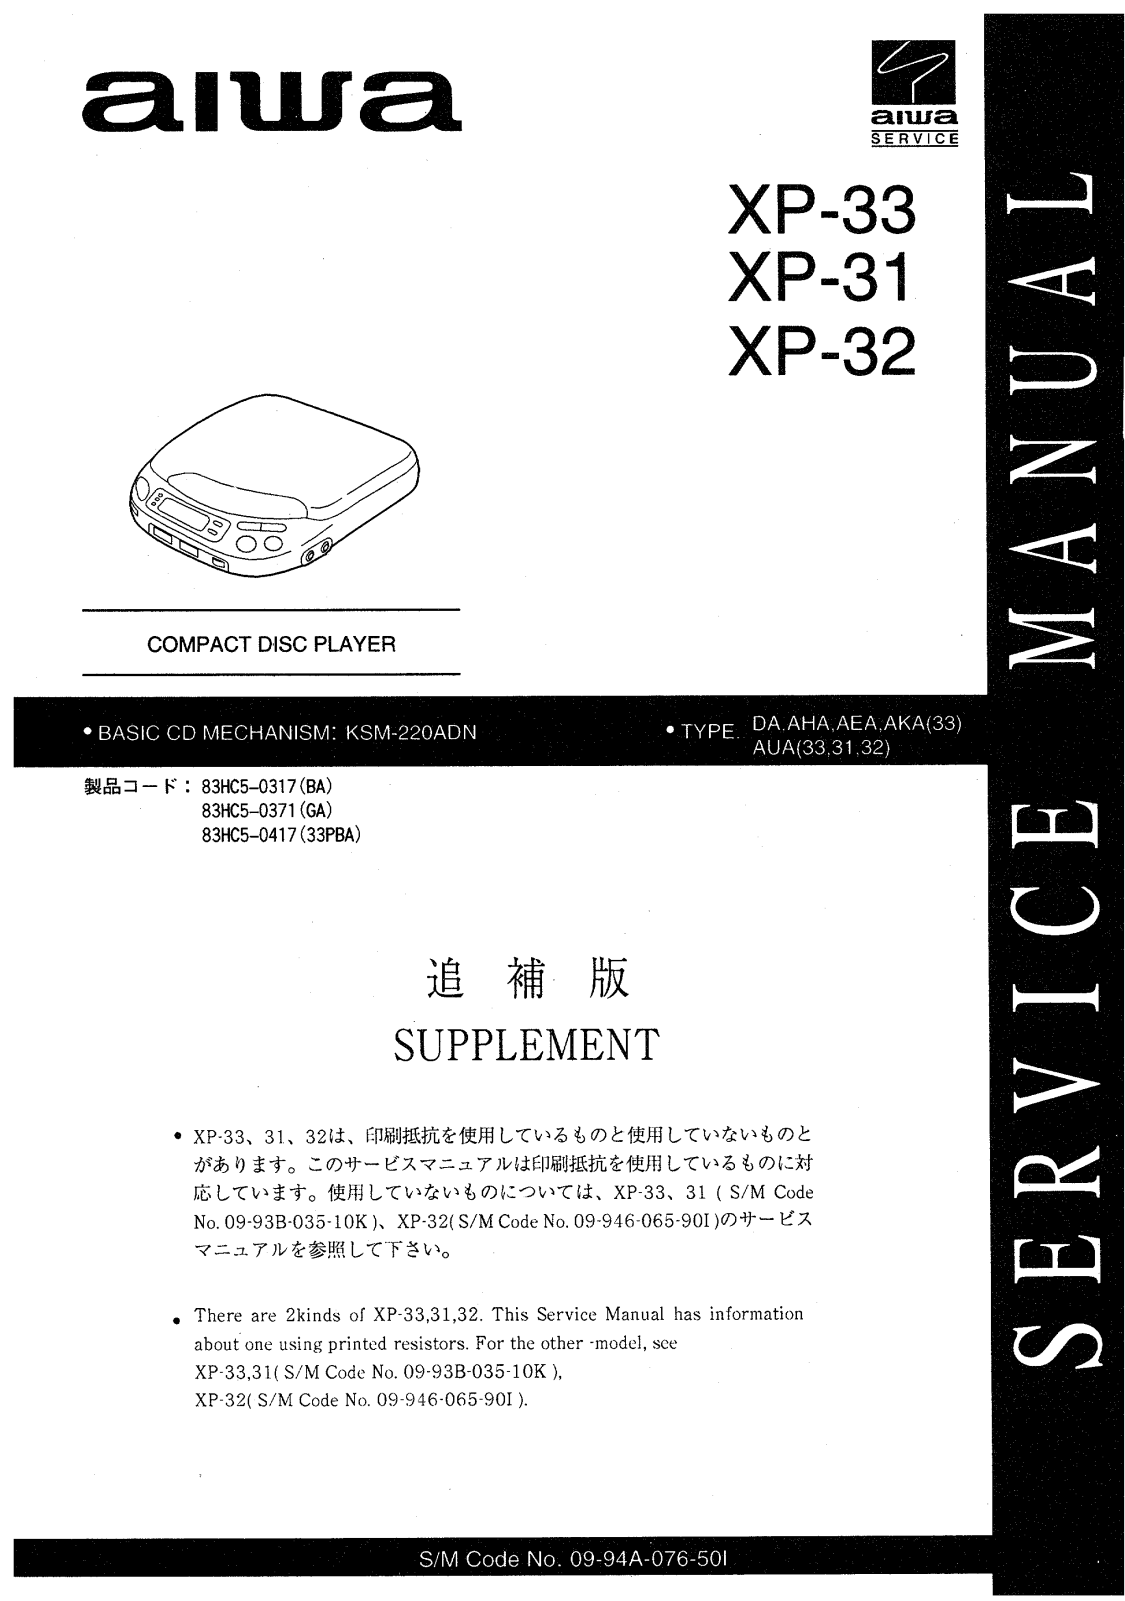 Aiwa XP-33, XP-31, XP-32 Service Manual